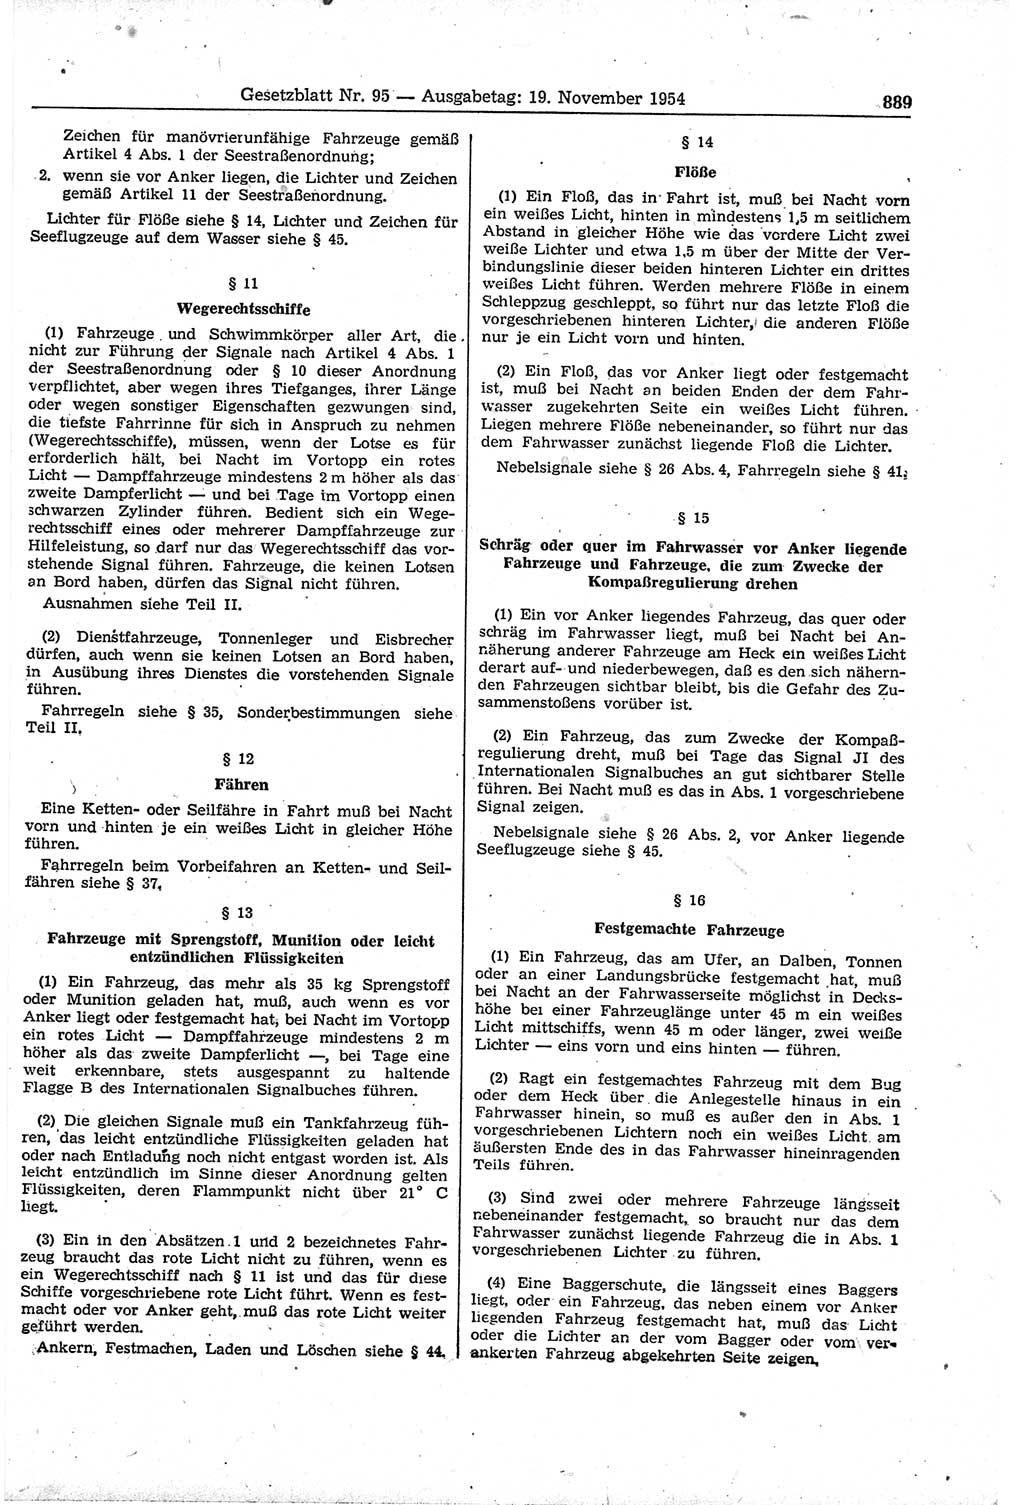 Gesetzblatt (GBl.) der Deutschen Demokratischen Republik (DDR) 1954, Seite 889 (GBl. DDR 1954, S. 889)